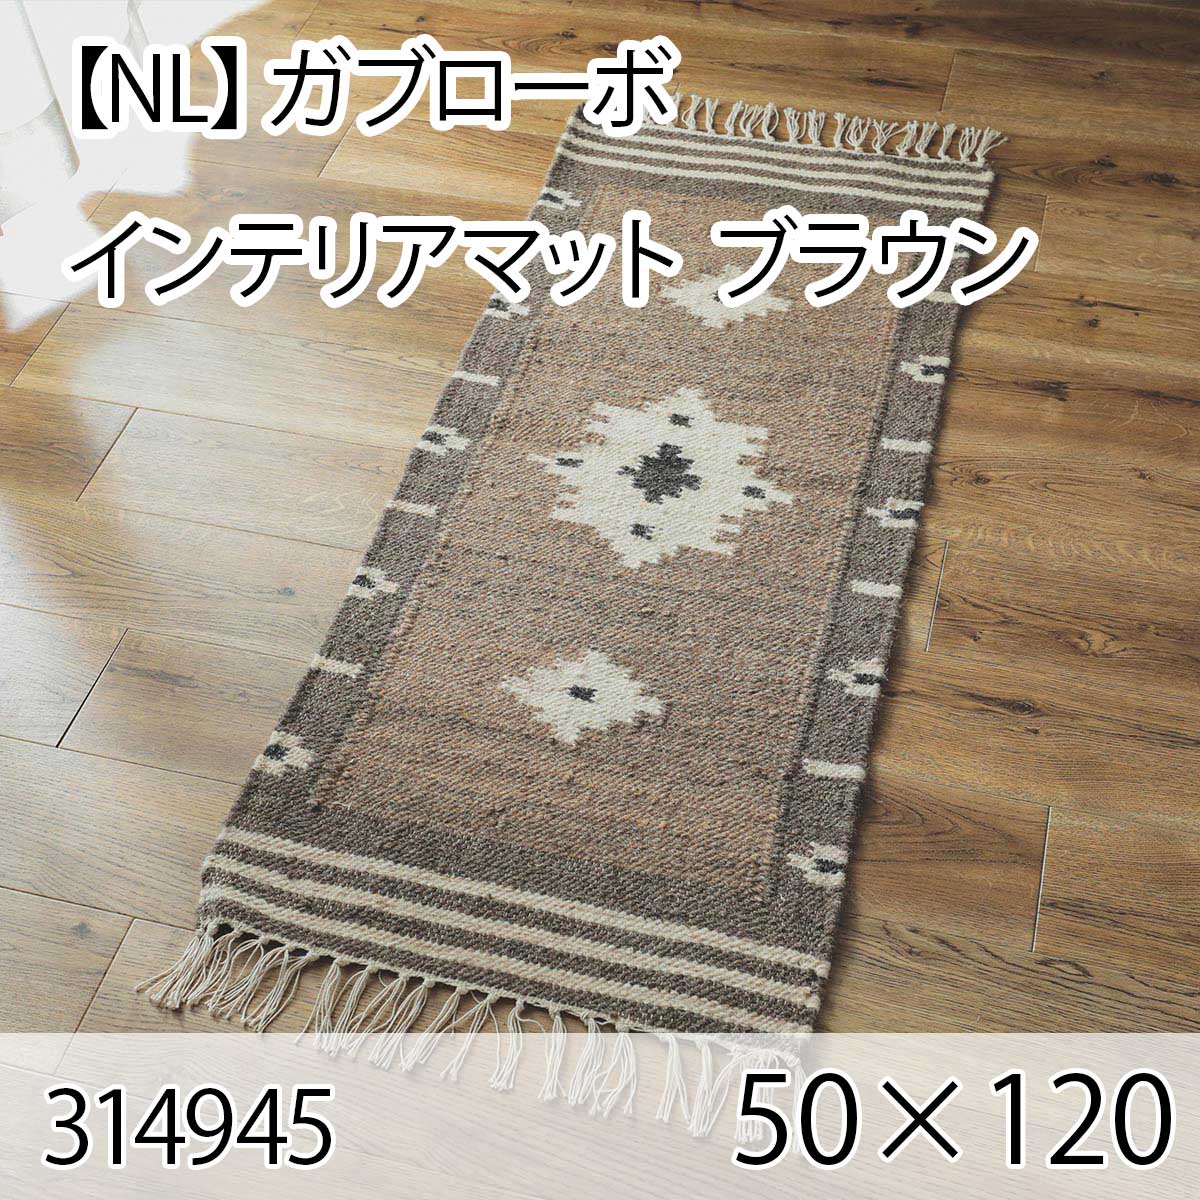 【NL】ガブローボ インテリアマット 50cmx120cm ブラウン